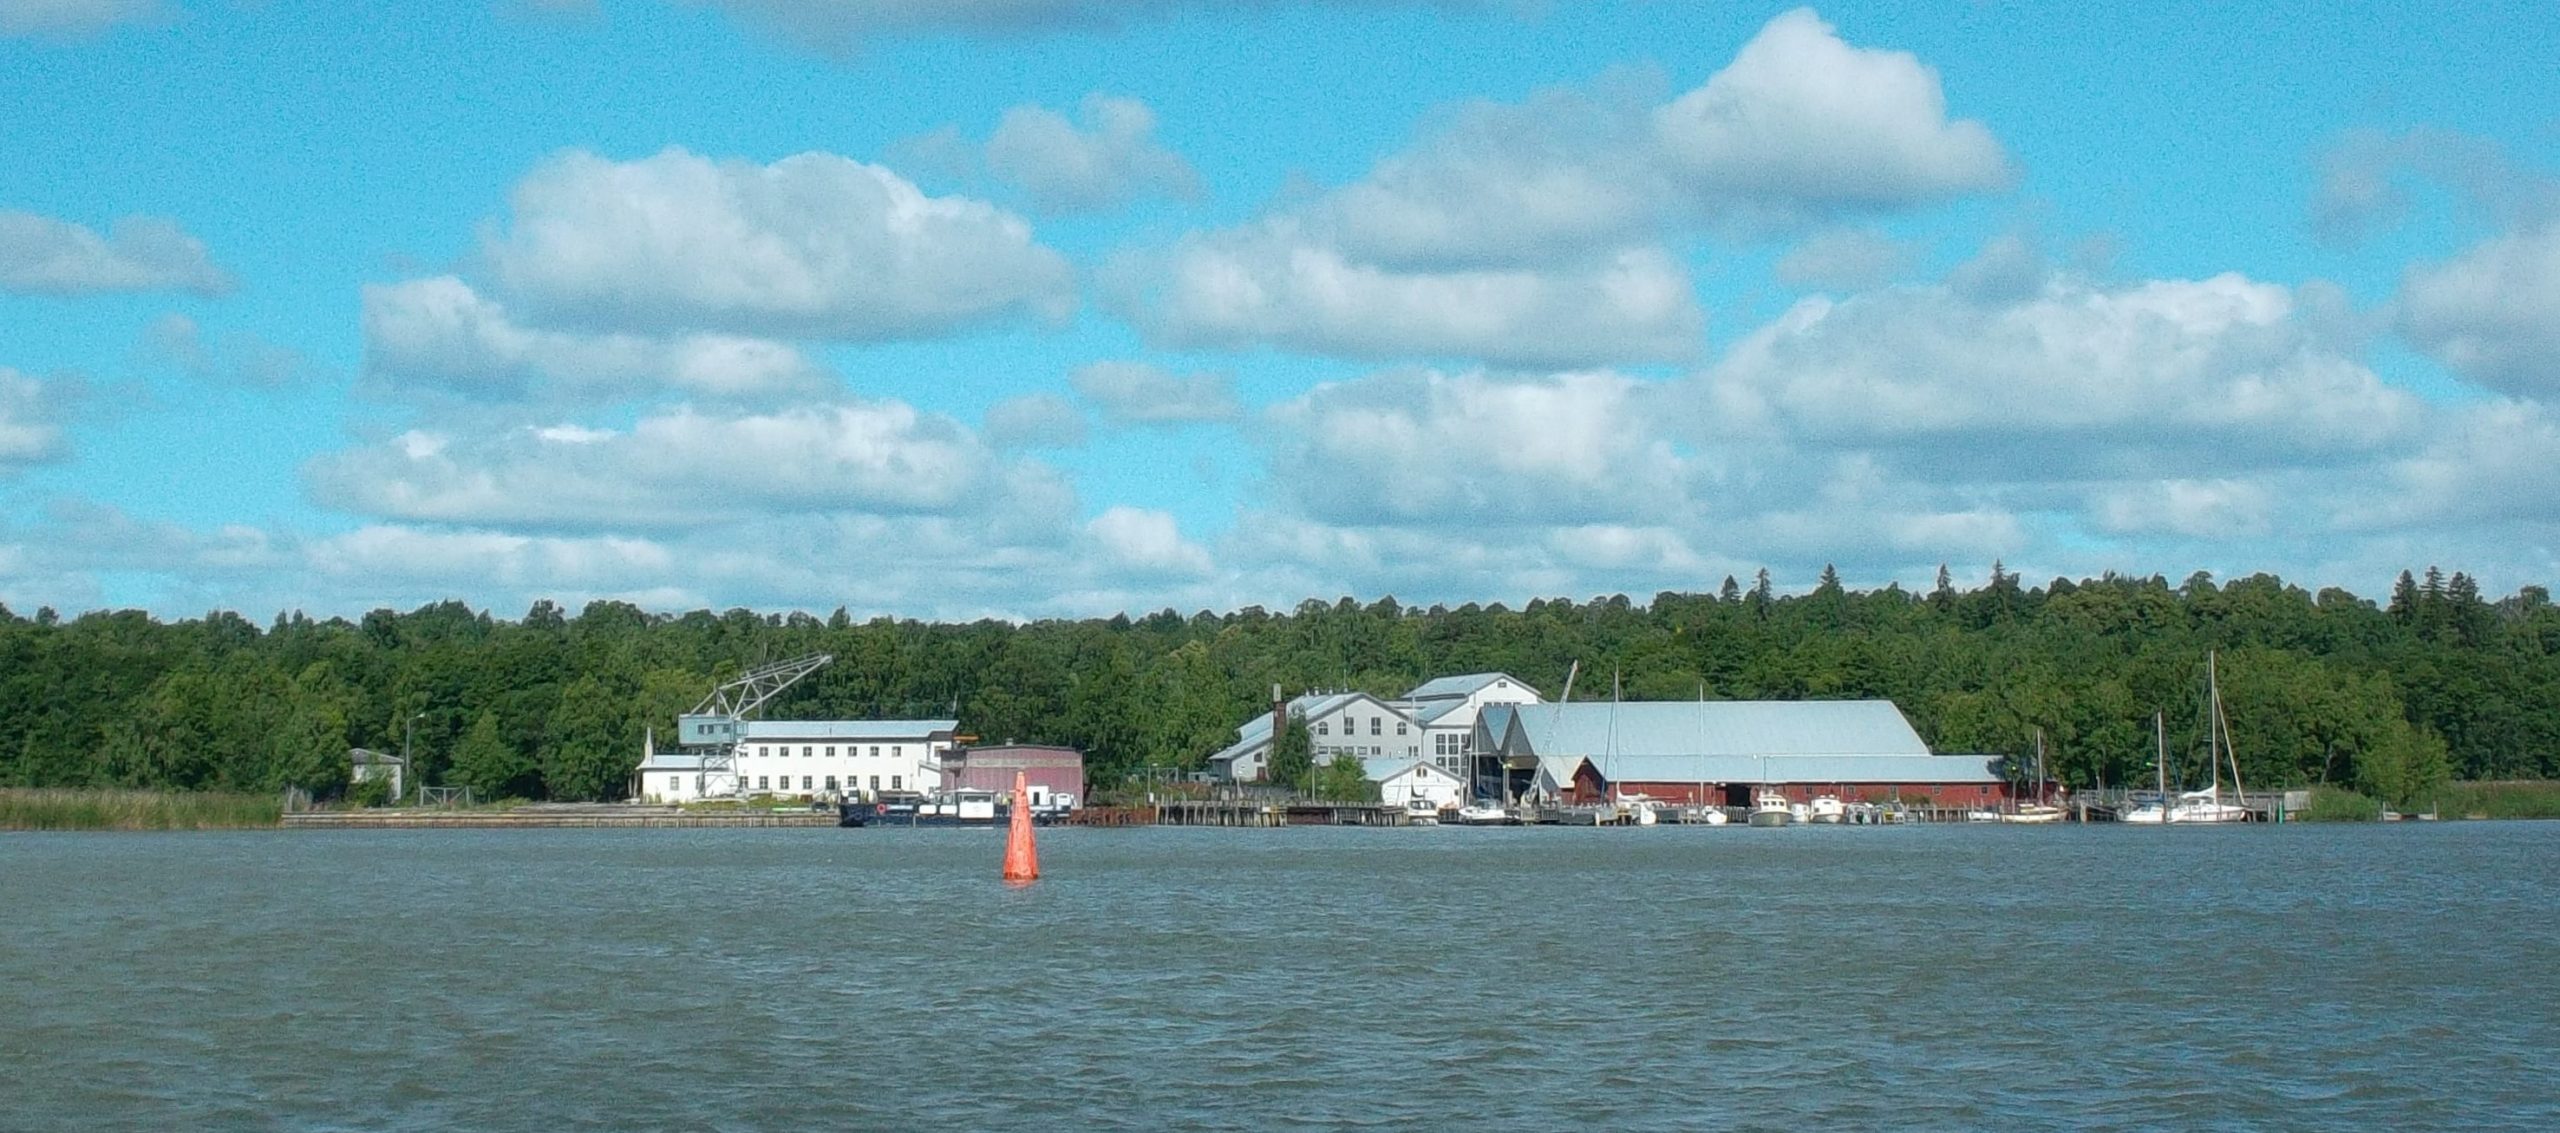 Mereltä päin otetussa kuvassa näkyy veneitä laitureissa ja useita valkoisia tai punaisia pitkänomaisia rakennuksia. Taustalla puita.